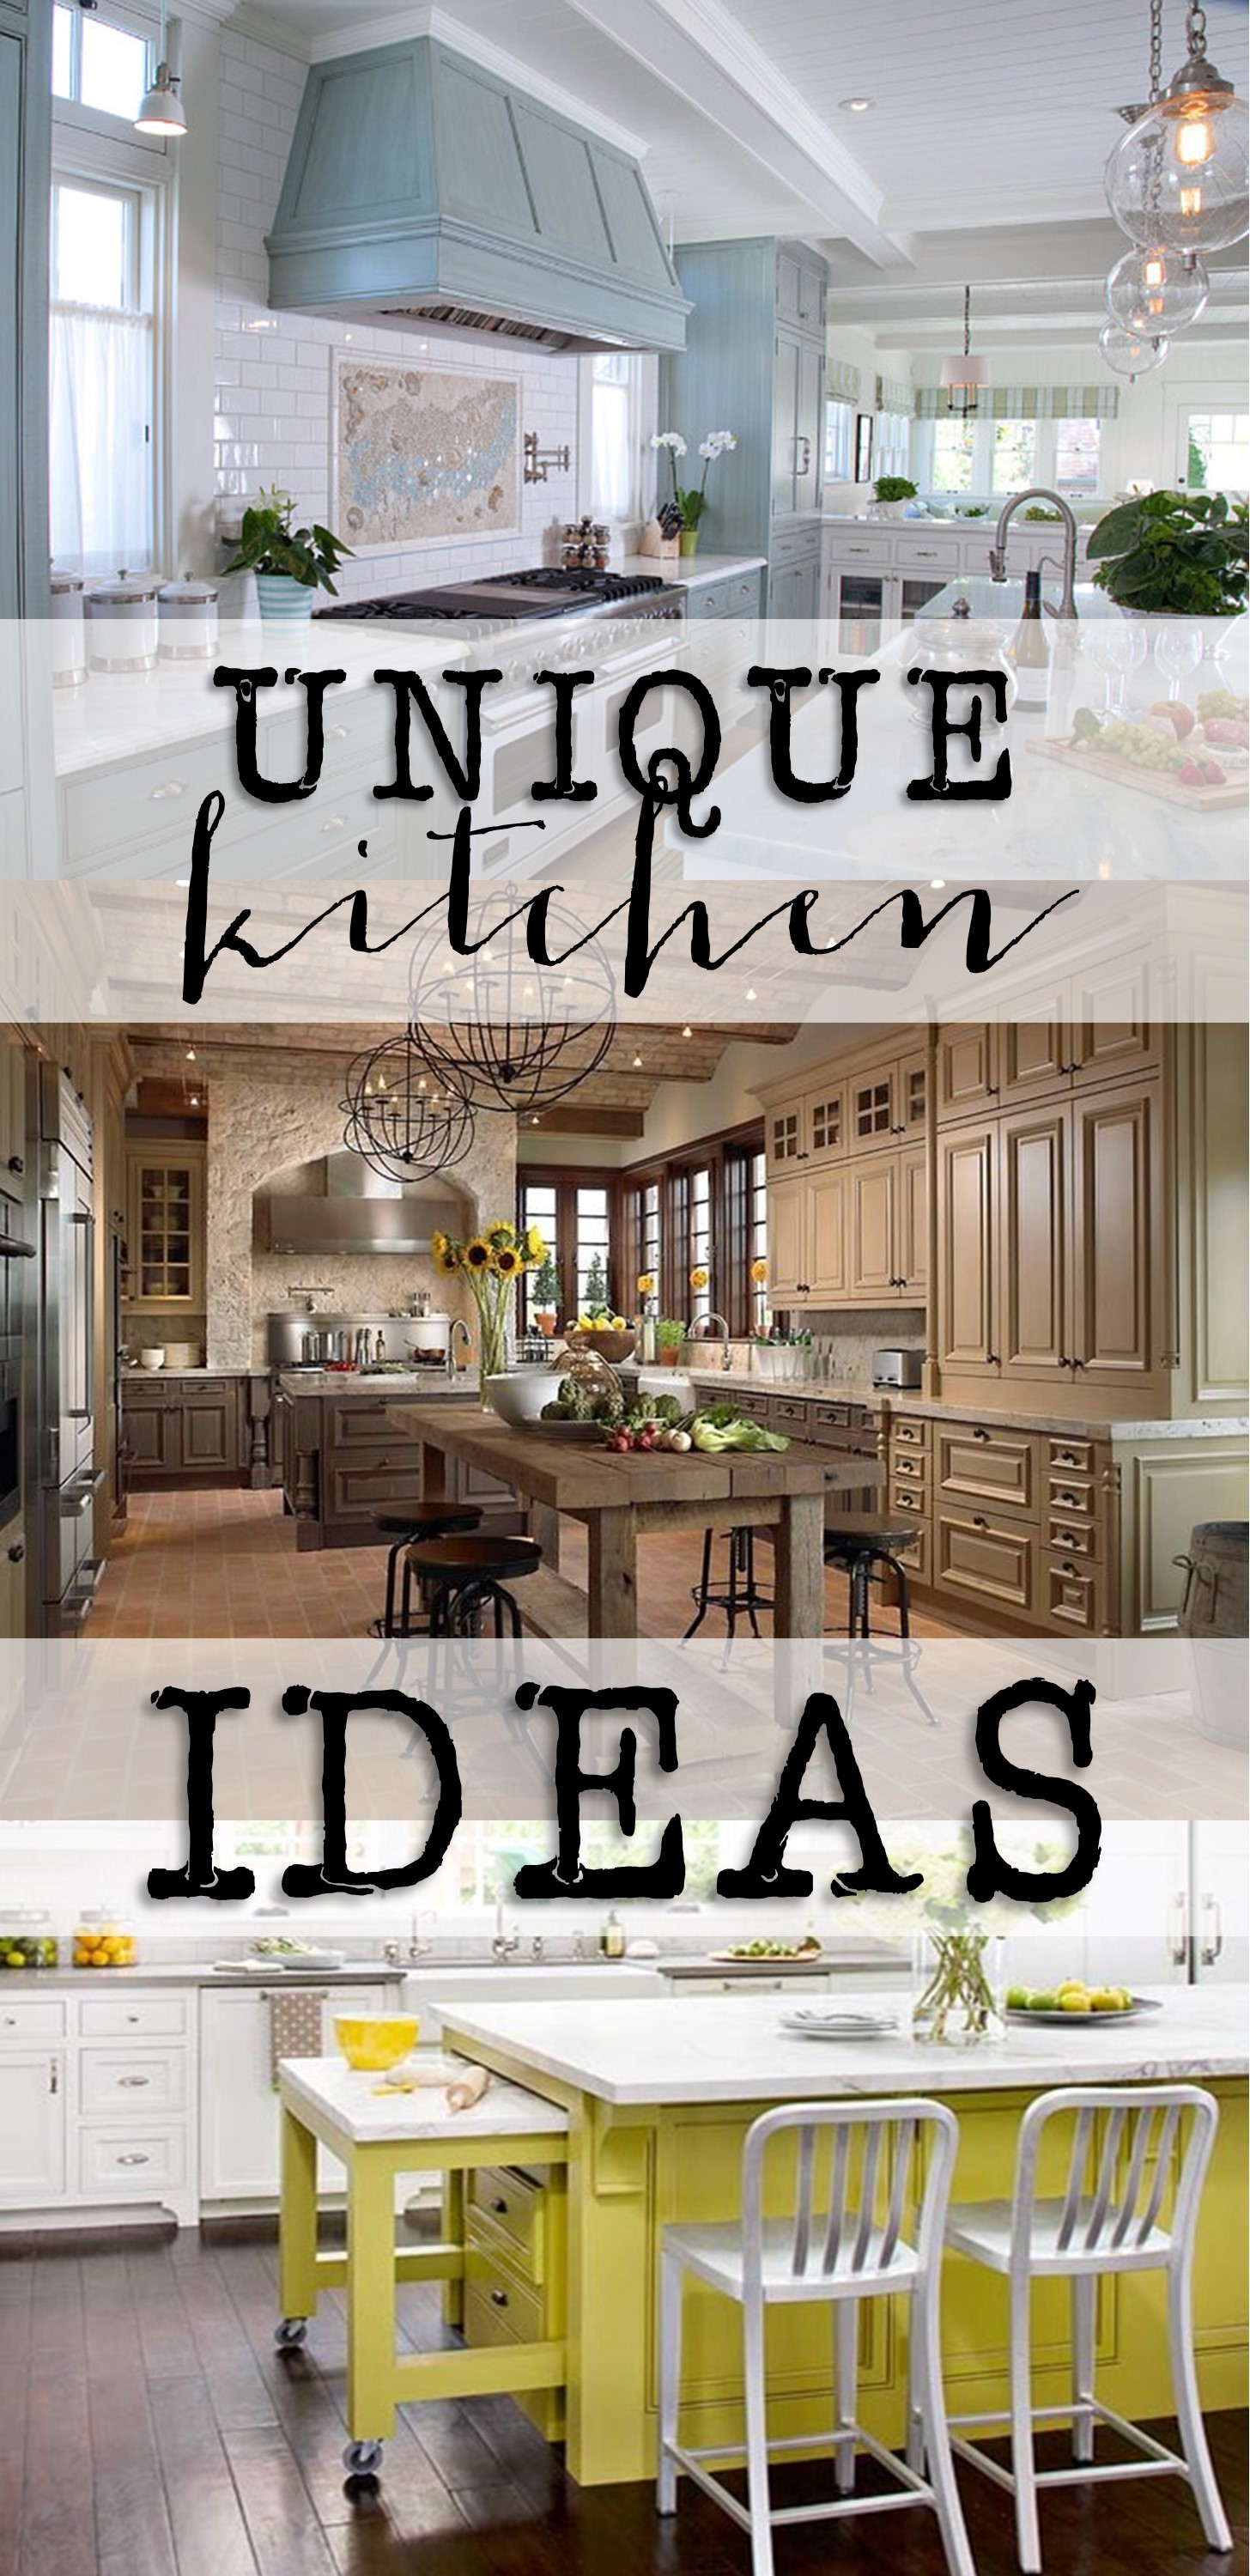 https://houseofhargrove.com/wp-content/uploads/2016/04/Unique-Kitchen-Ideas-13.jpg